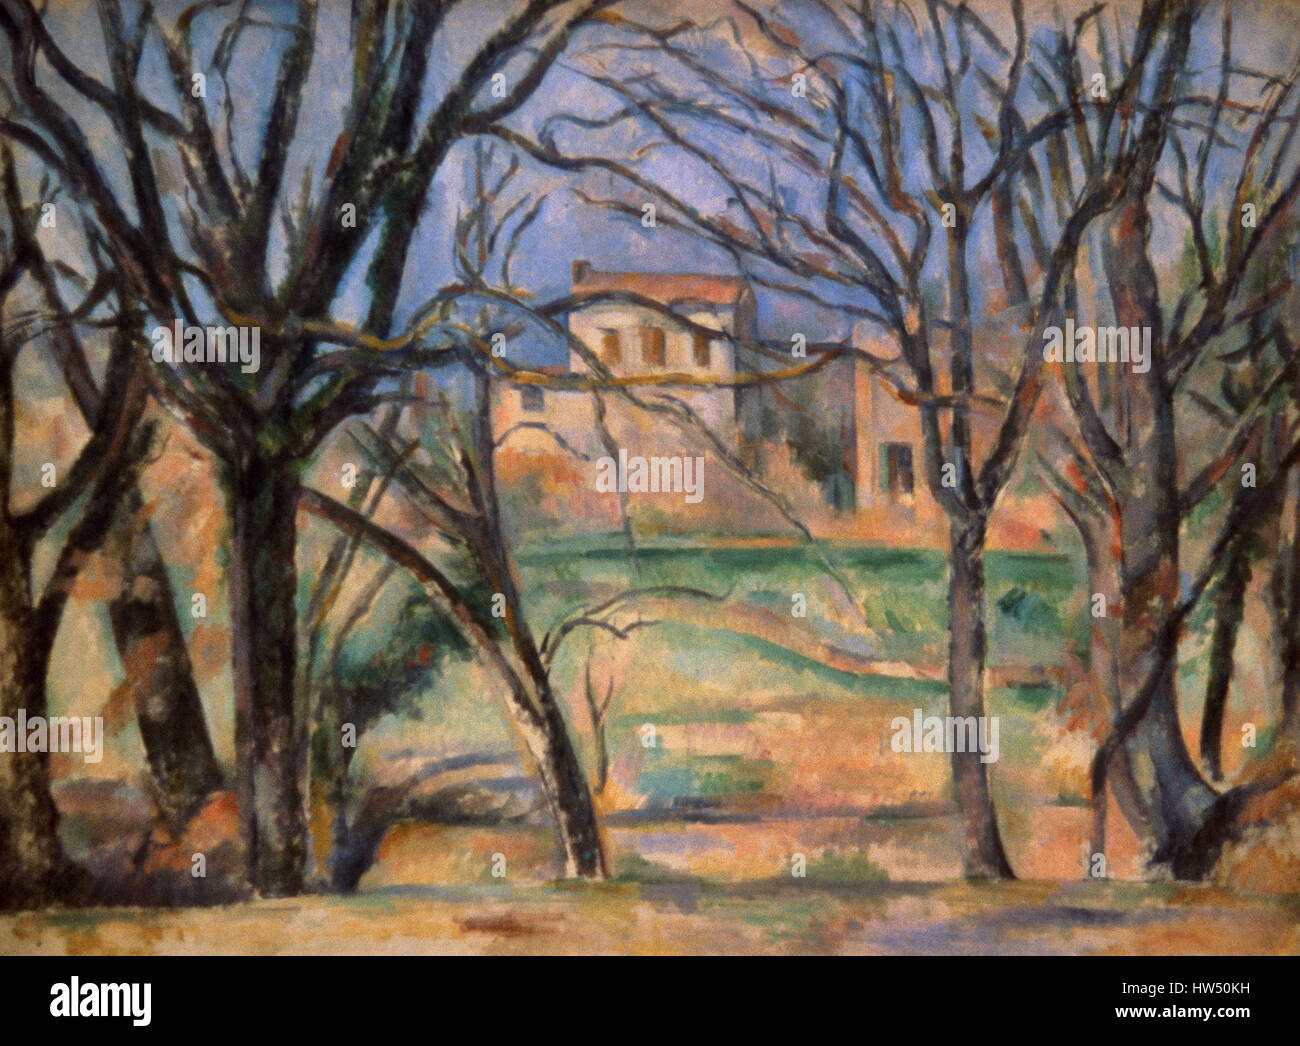 Paul Cezanne (1839-1906). El pintor francés. Postimpresionista. Árboles y casas. Óleo sobre lienzo, 1885-1886. Orangerie Museo. París. Francia. Foto de stock